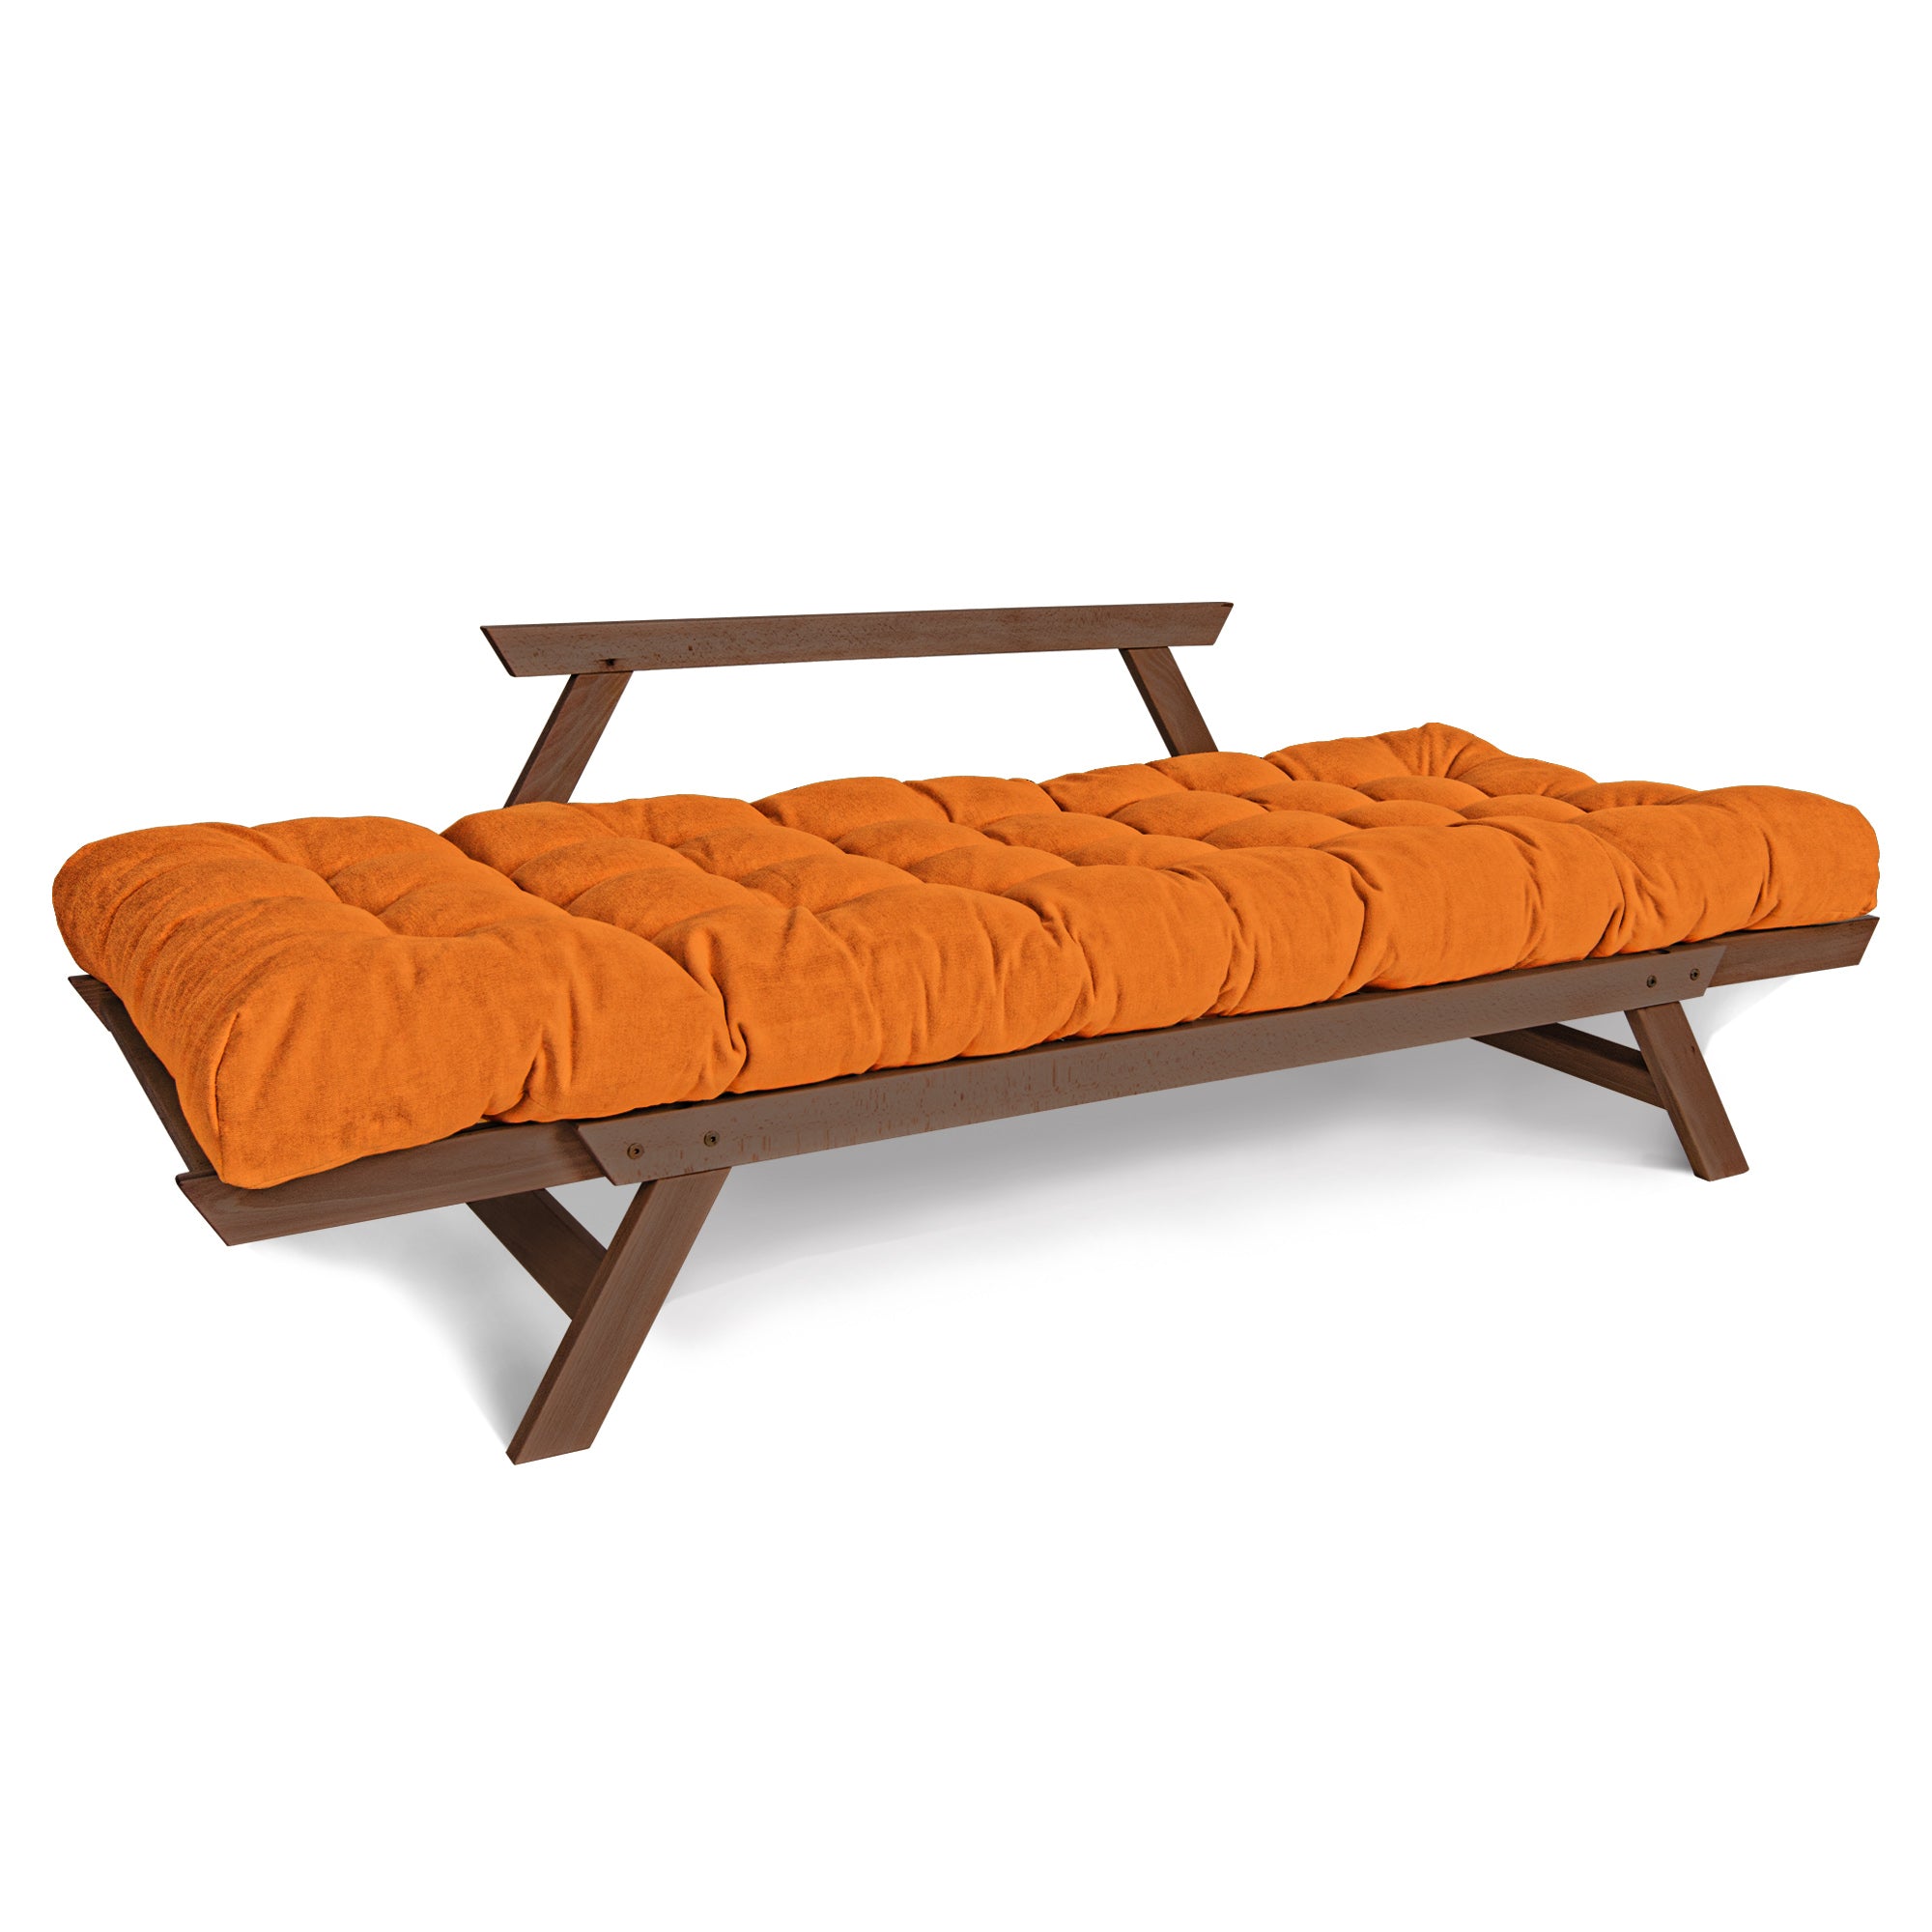 ALLEGRO Canapé-lit, cadre en bois de hêtre, couleur noyer